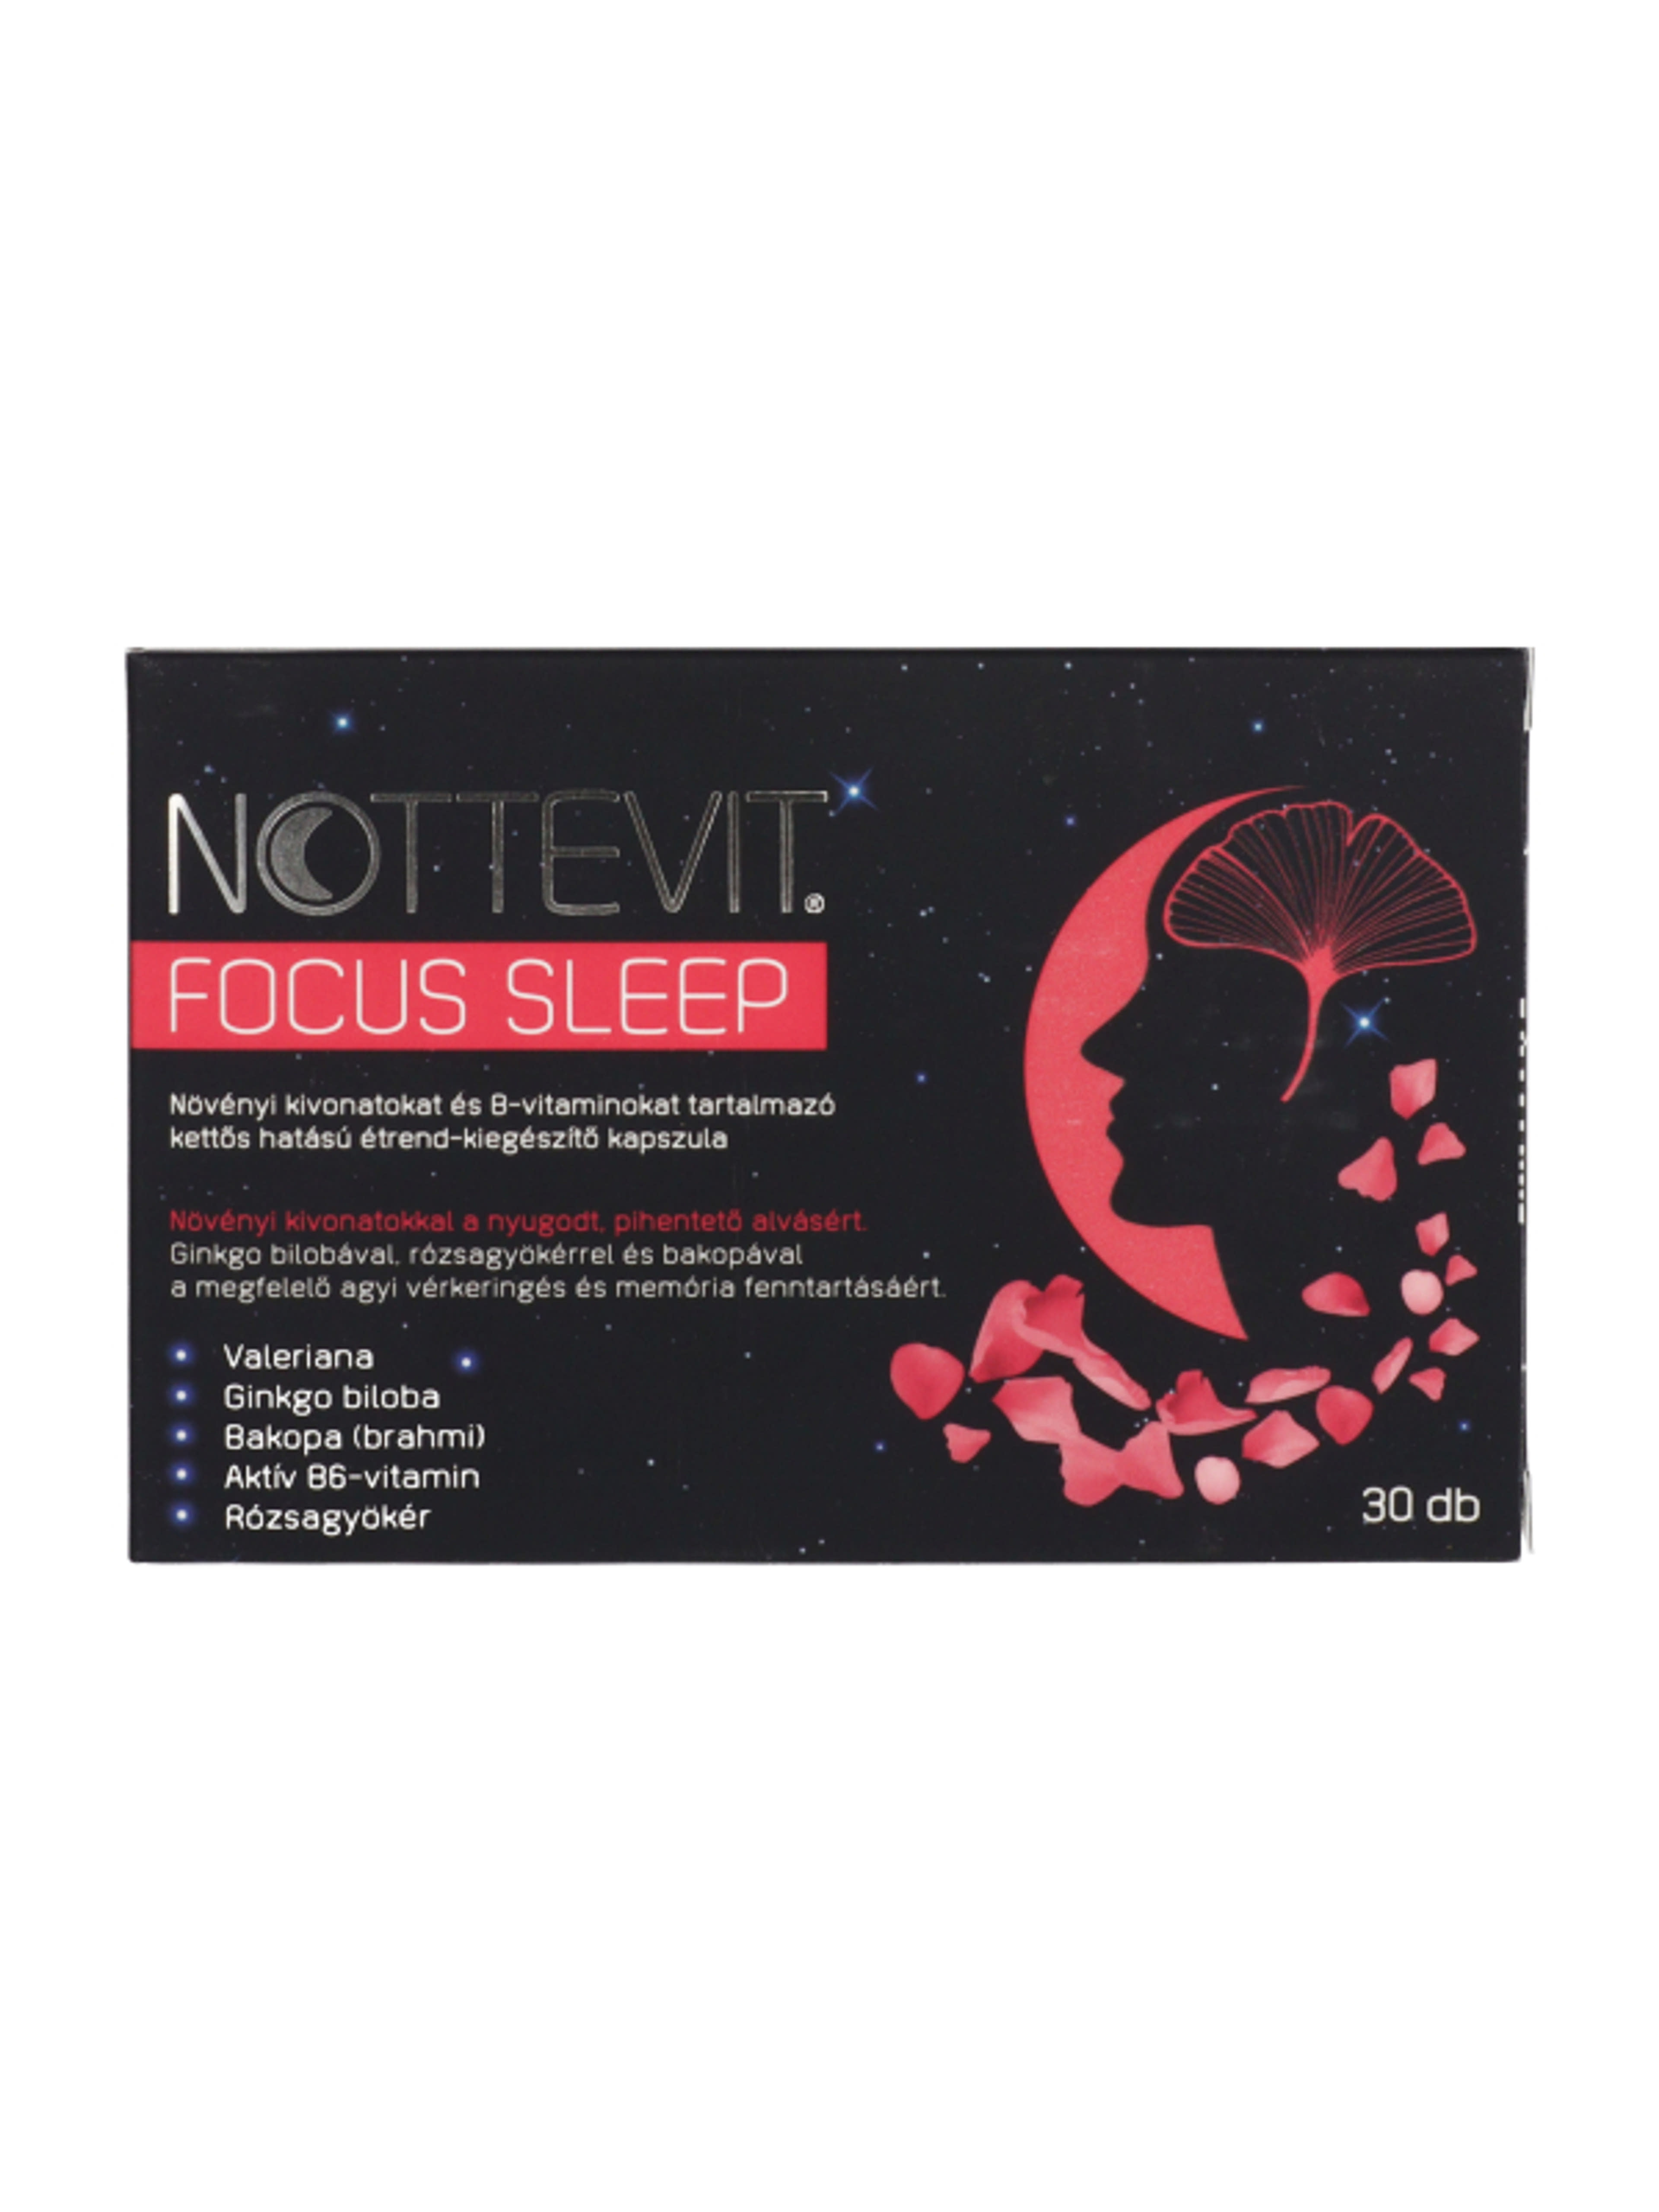 Nottevit Focus Sleep kapszula - 30 db